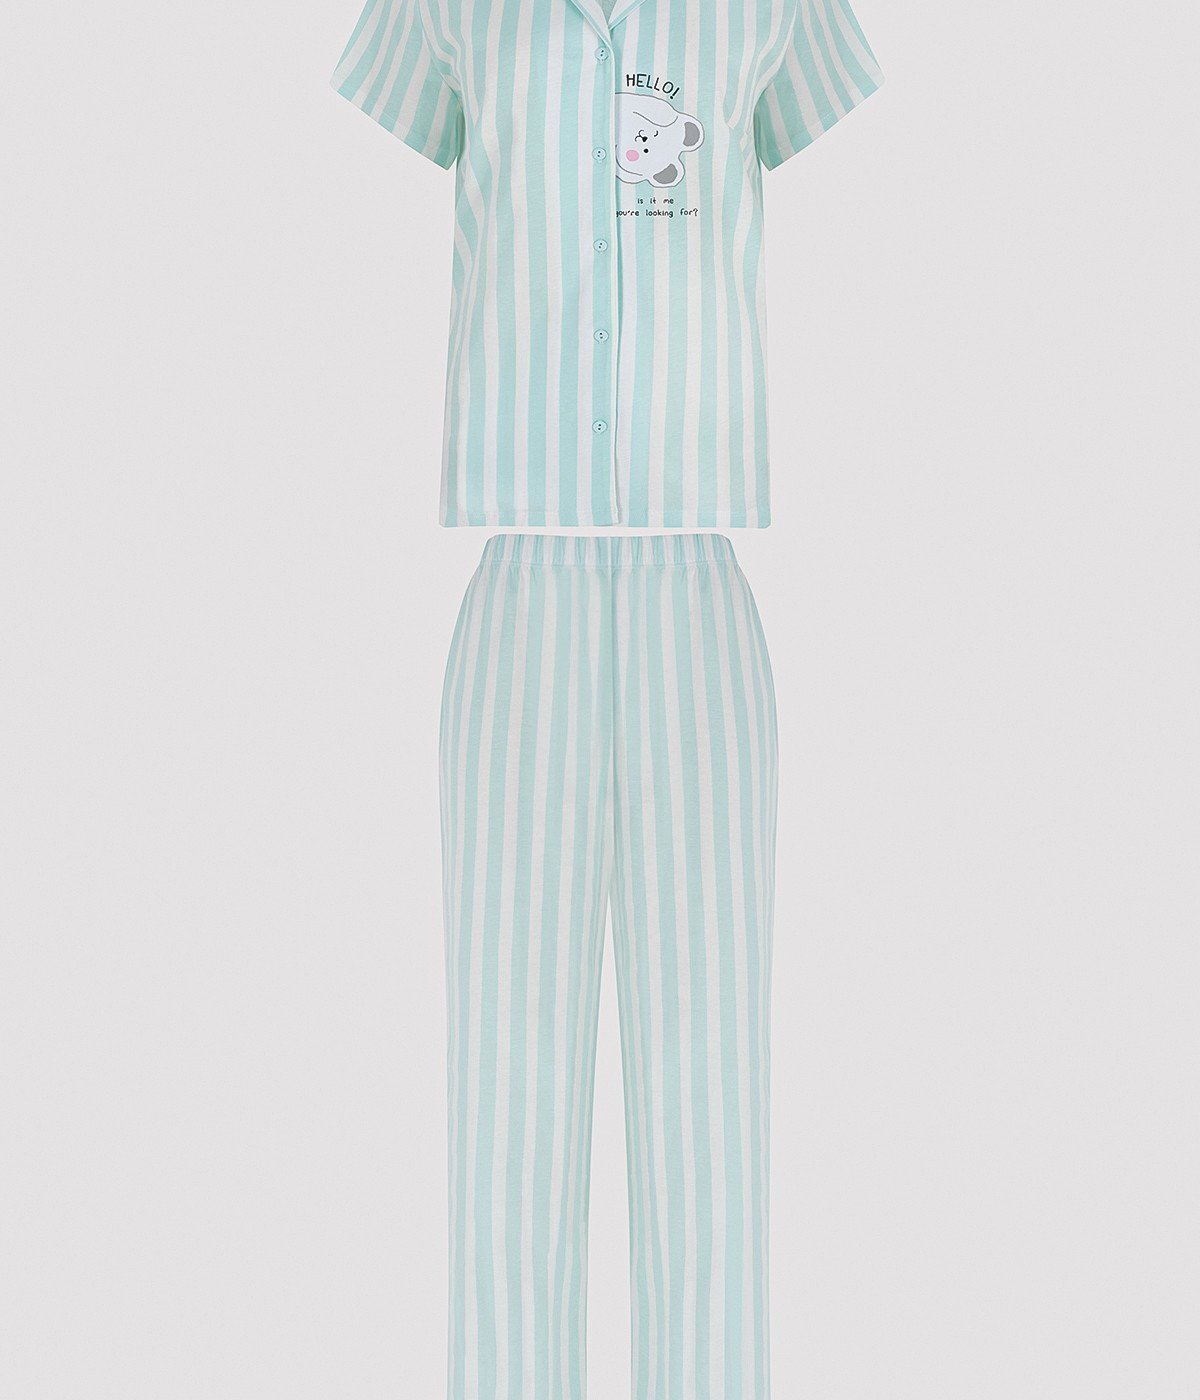 Set Pijama Cuteness Striped